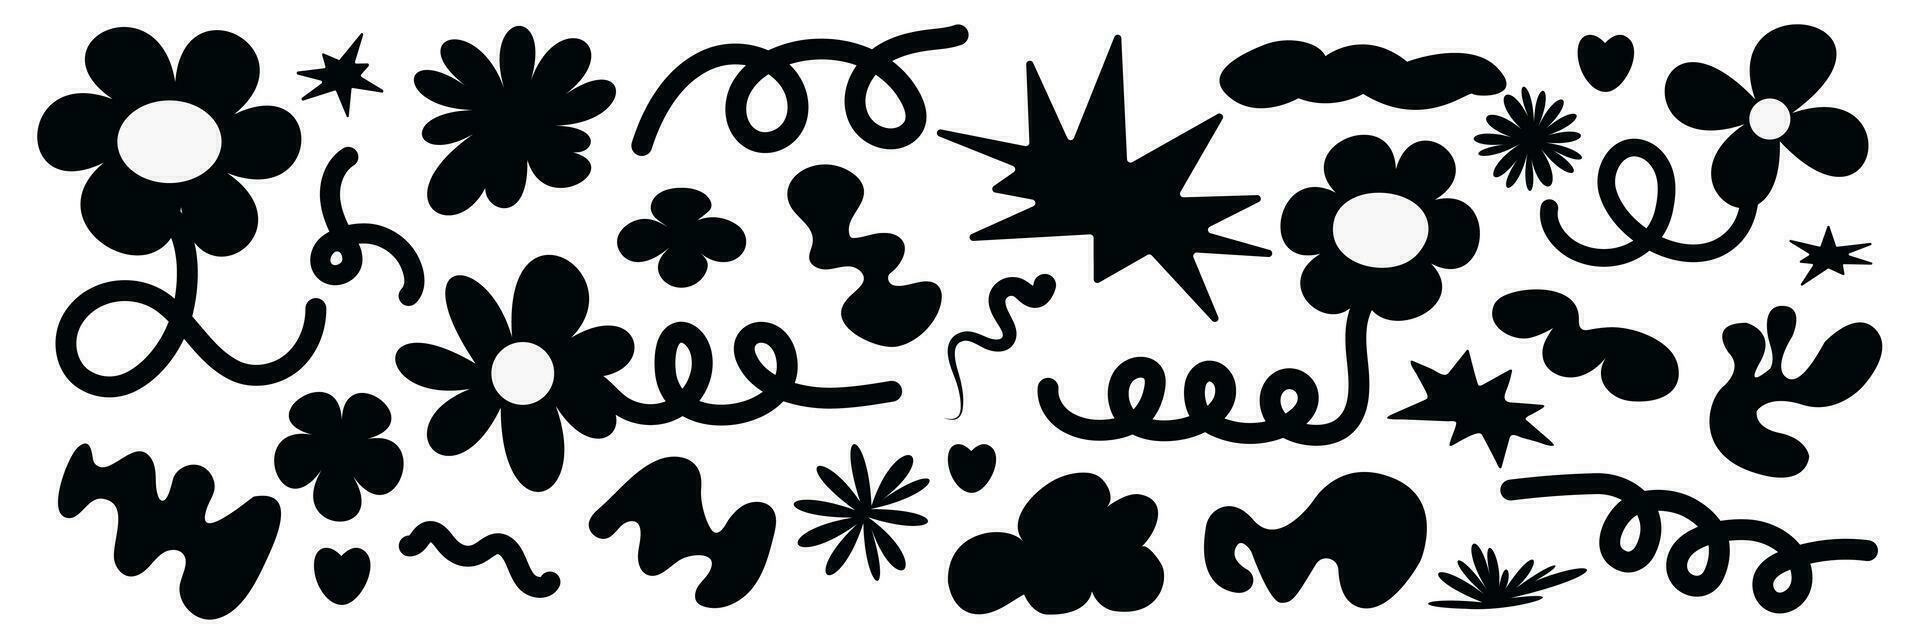 uppsättning av modern färgrik blommor, former och doodles. abstrakt vektor illustration isolerat på vit bakgrund.